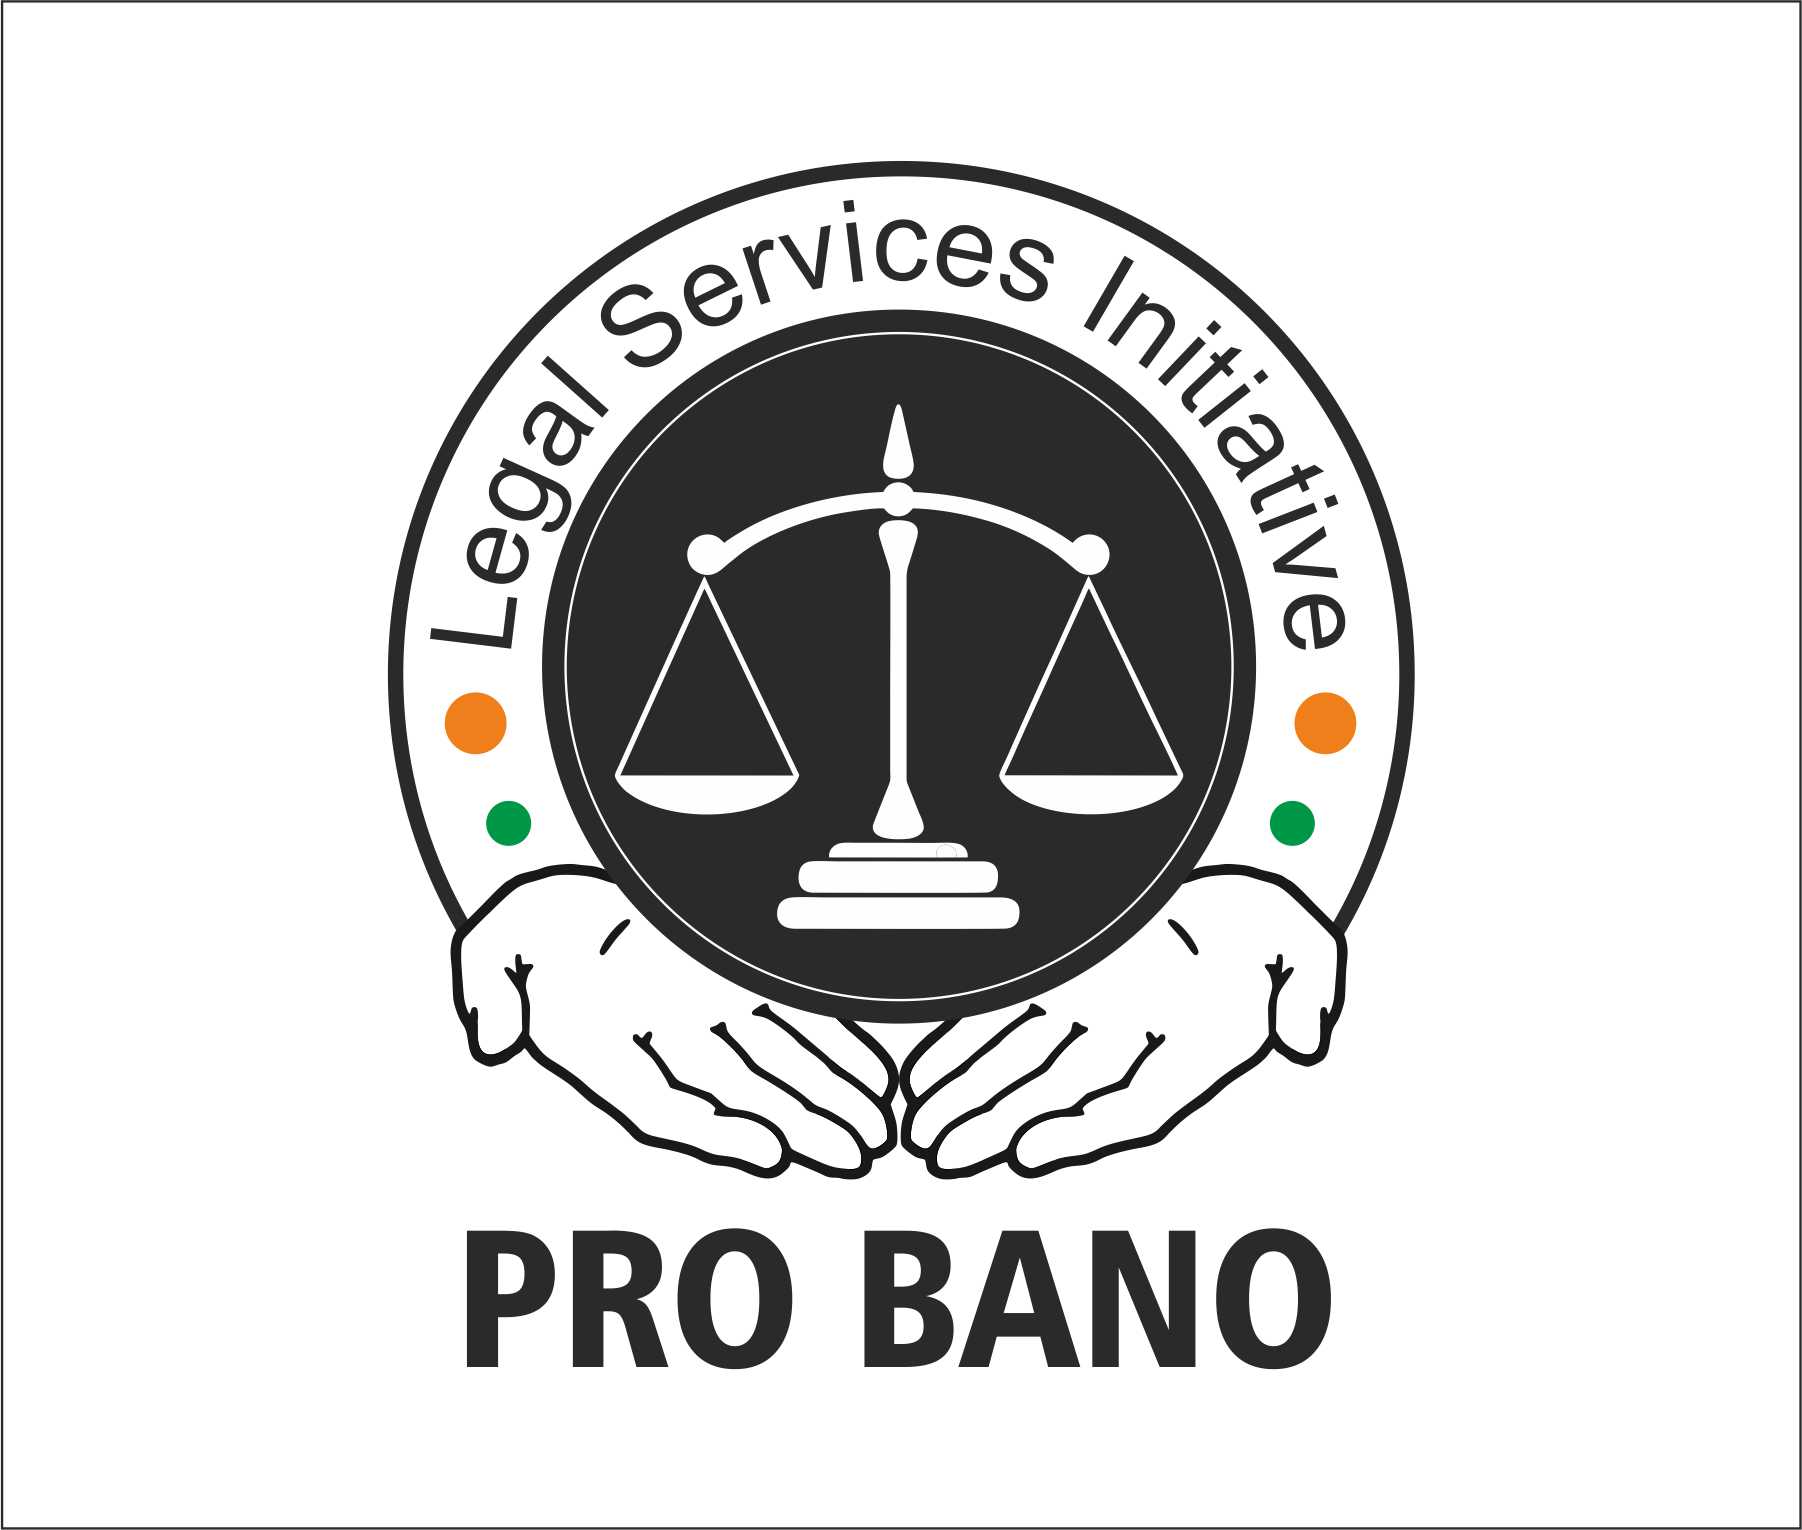 Legal Service Logo - Logo Design Contest for Pro Bono Legal Services initiative ...